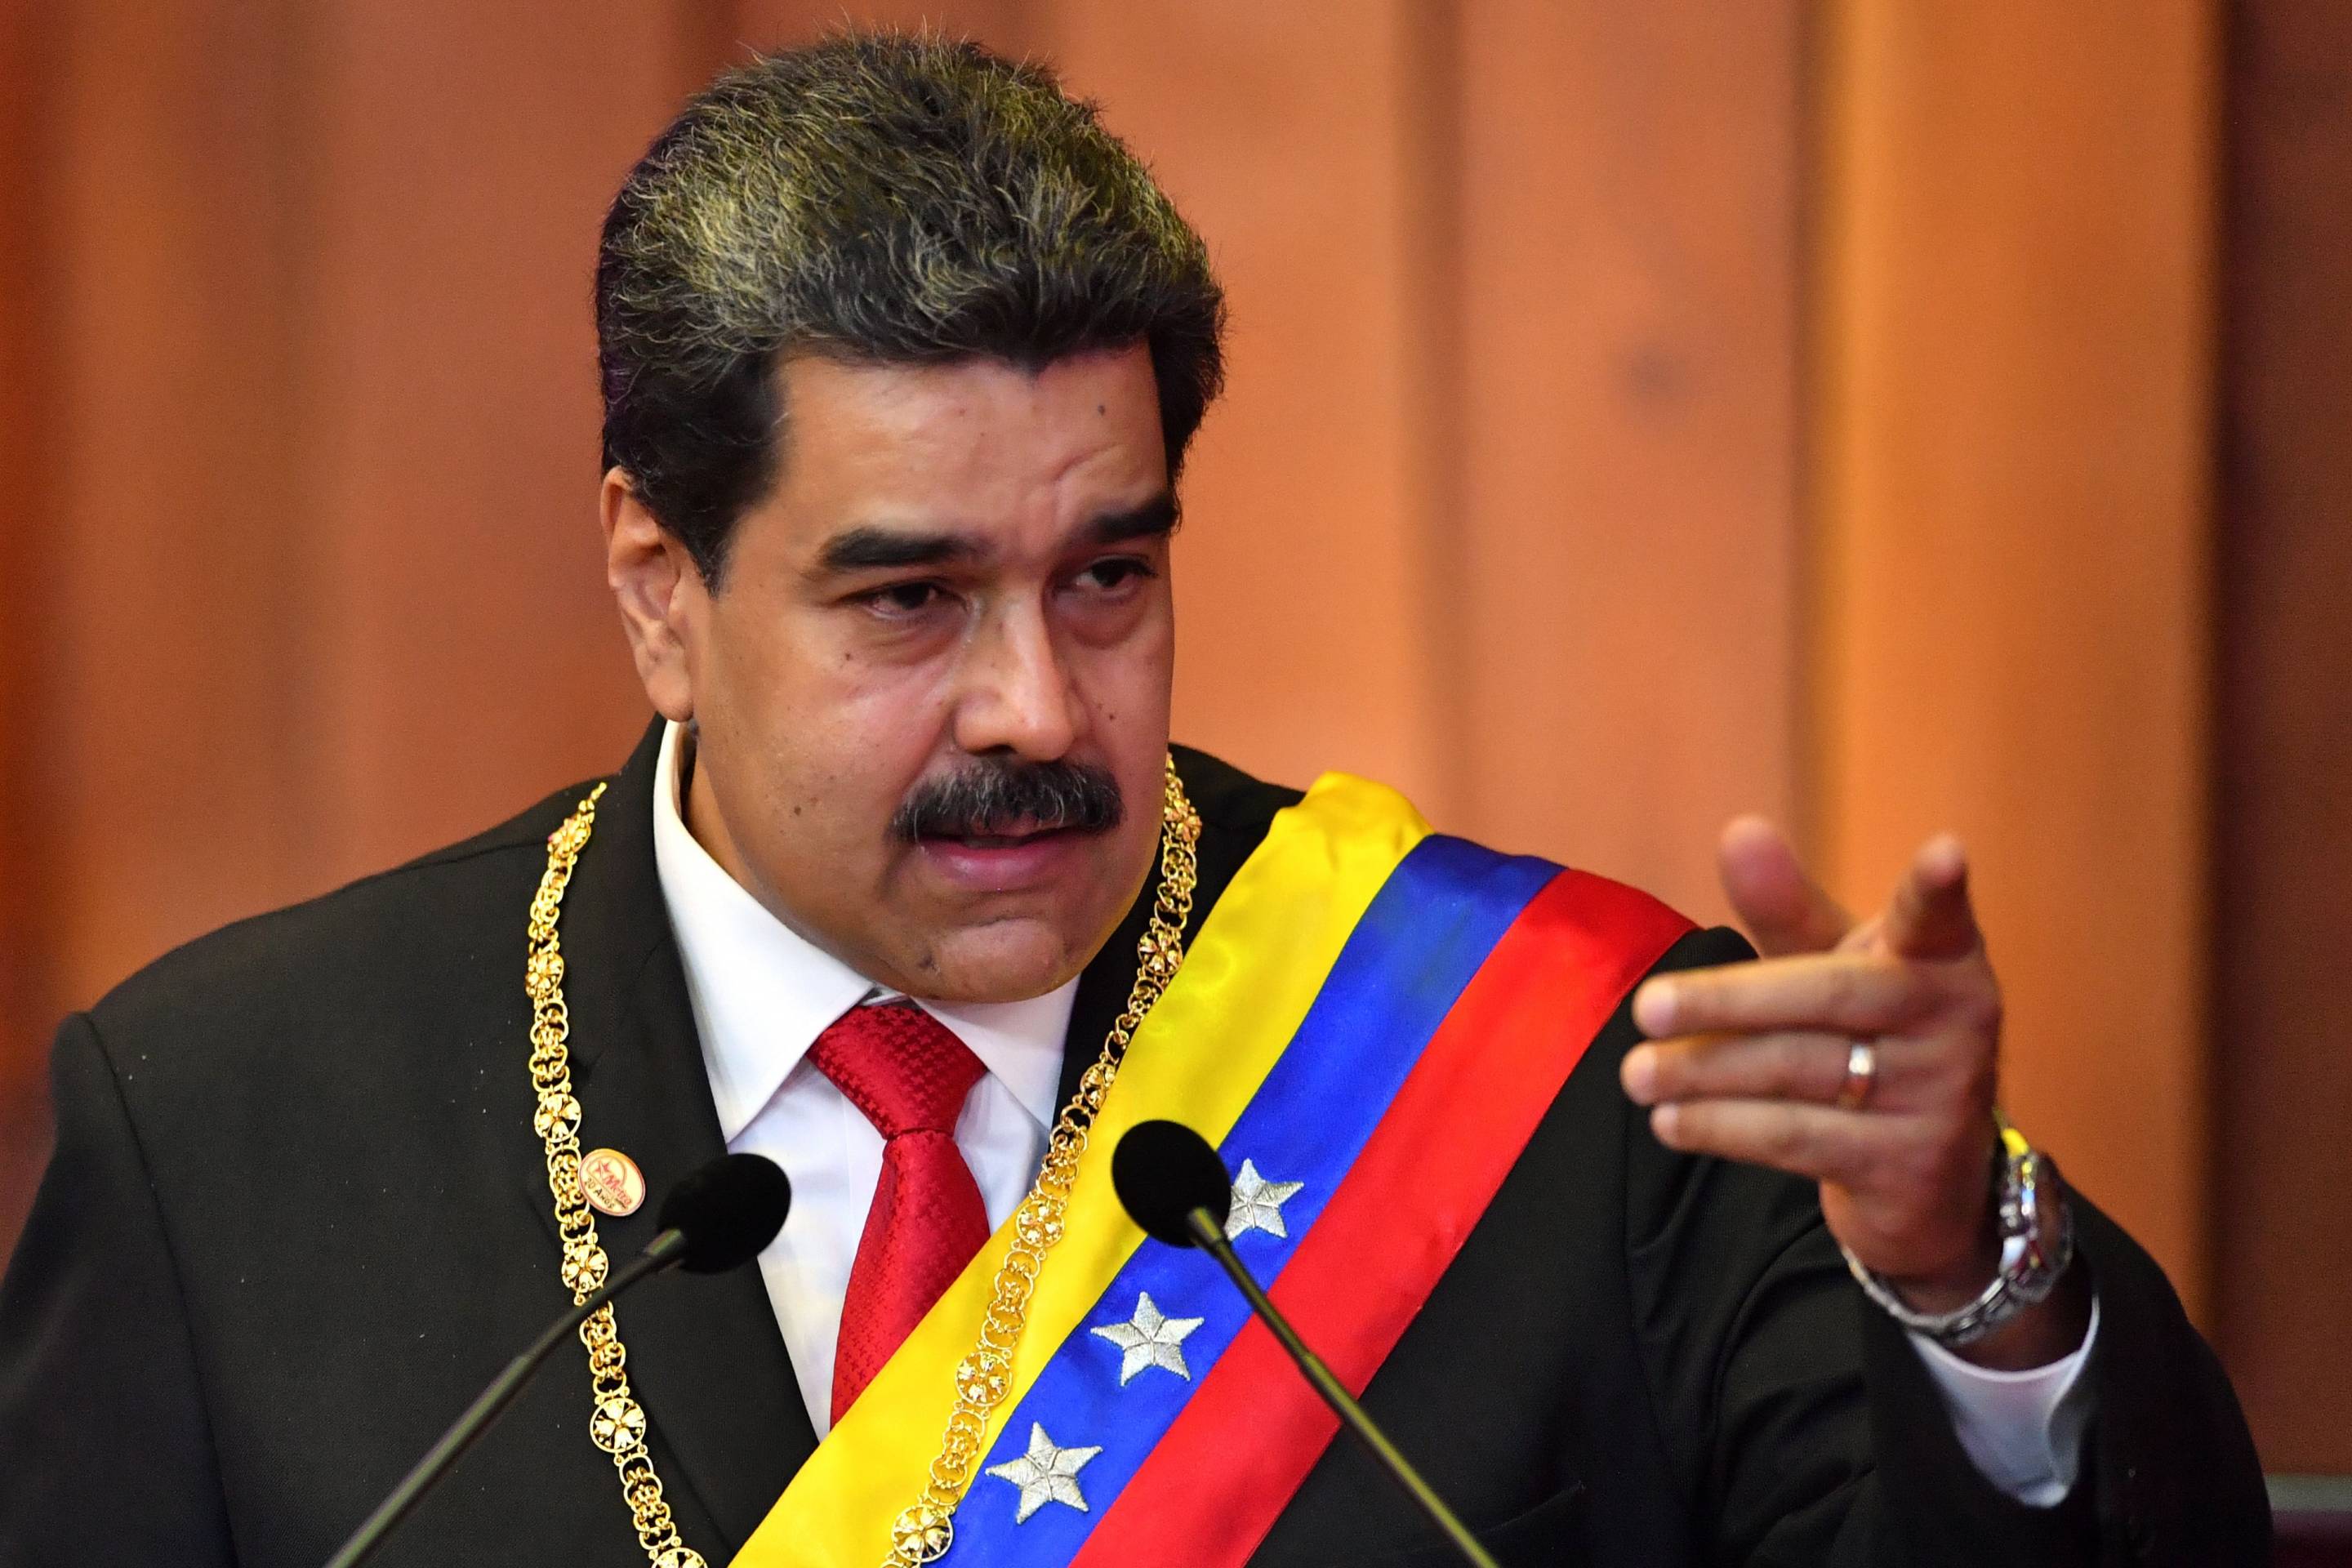 El régimen de Nicolás Maduro prohibió la salida de Venezuela a un abogado defensor de opositores